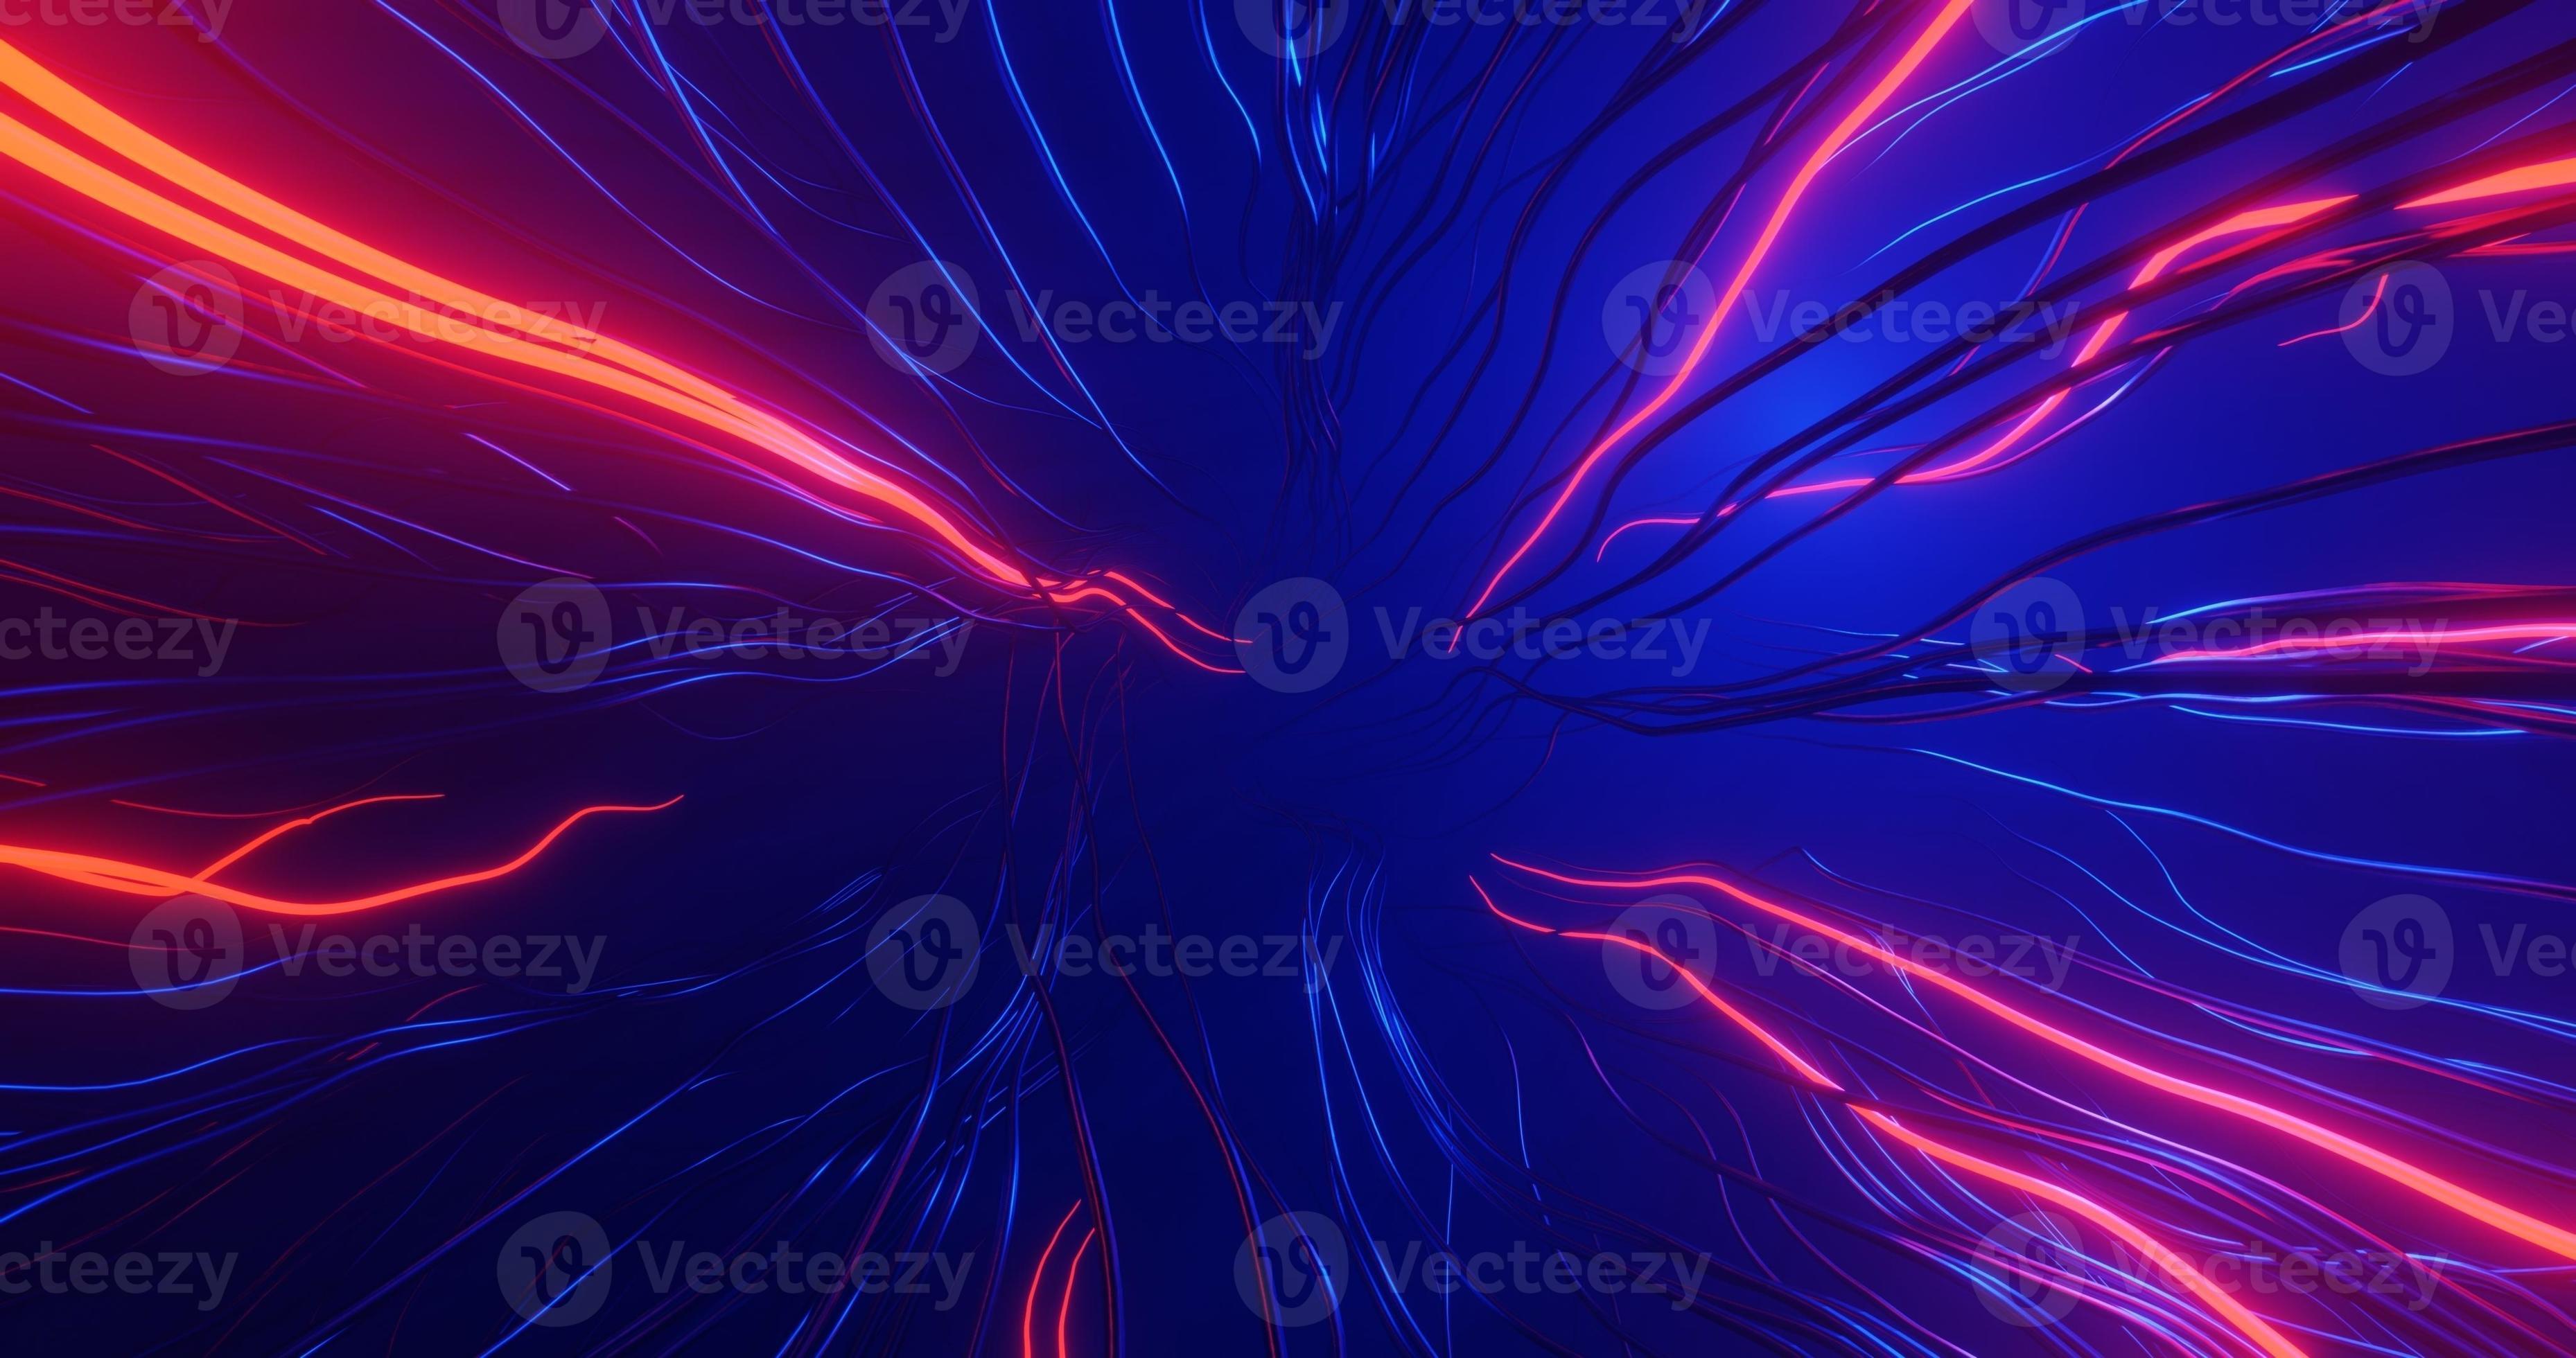 Hình nền với nền trừu tượng ánh sáng xanh dương và sóng sợi đỏ sẽ làm cho máy tính của bạn trở nên đẹp mắt và ấn tượng hơn. Với bộ sưu tập của chúng tôi, bạn có thể tìm thấy những hình ảnh tuyệt vời này và trang trí cho máy tính của mình.